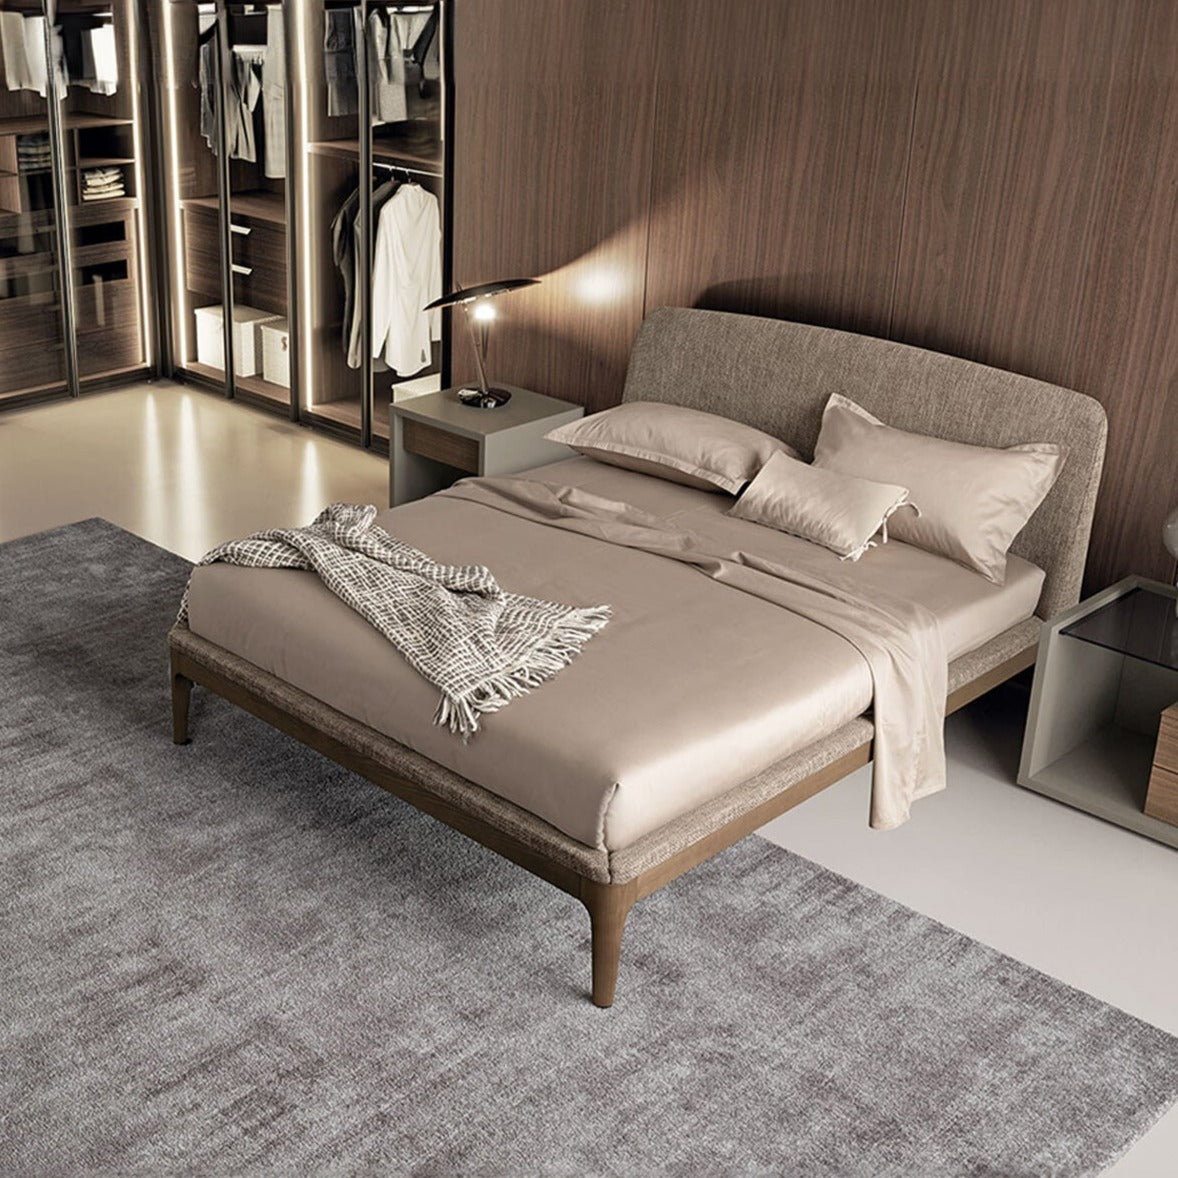 Elegance Bed with Upholstered Frame